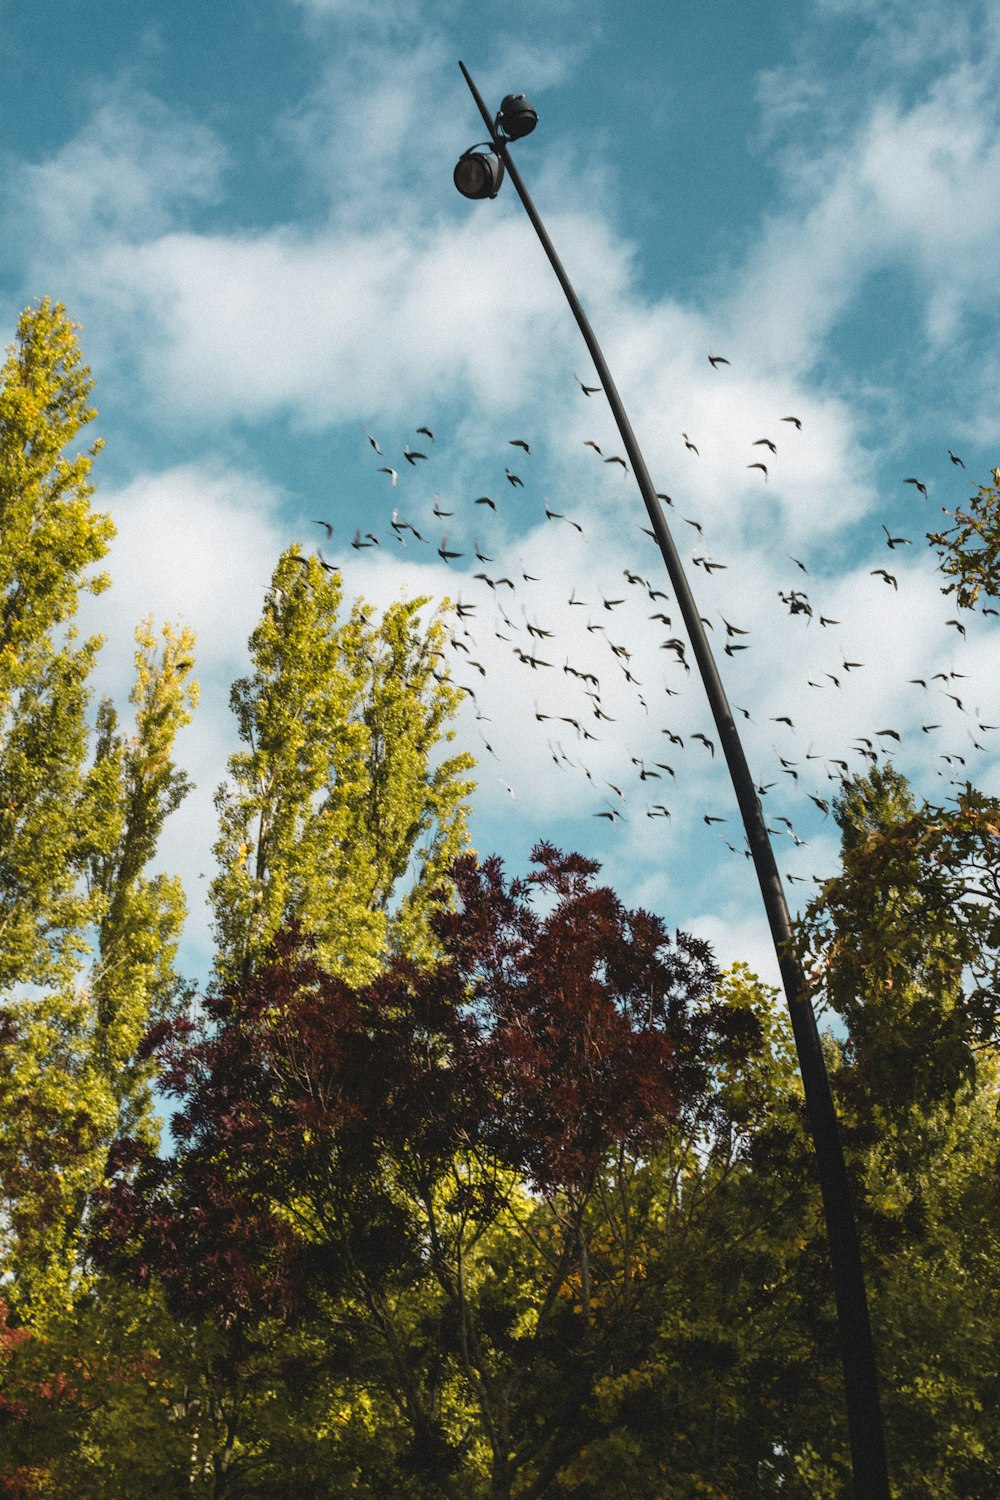 a flock of birds flying over a street light